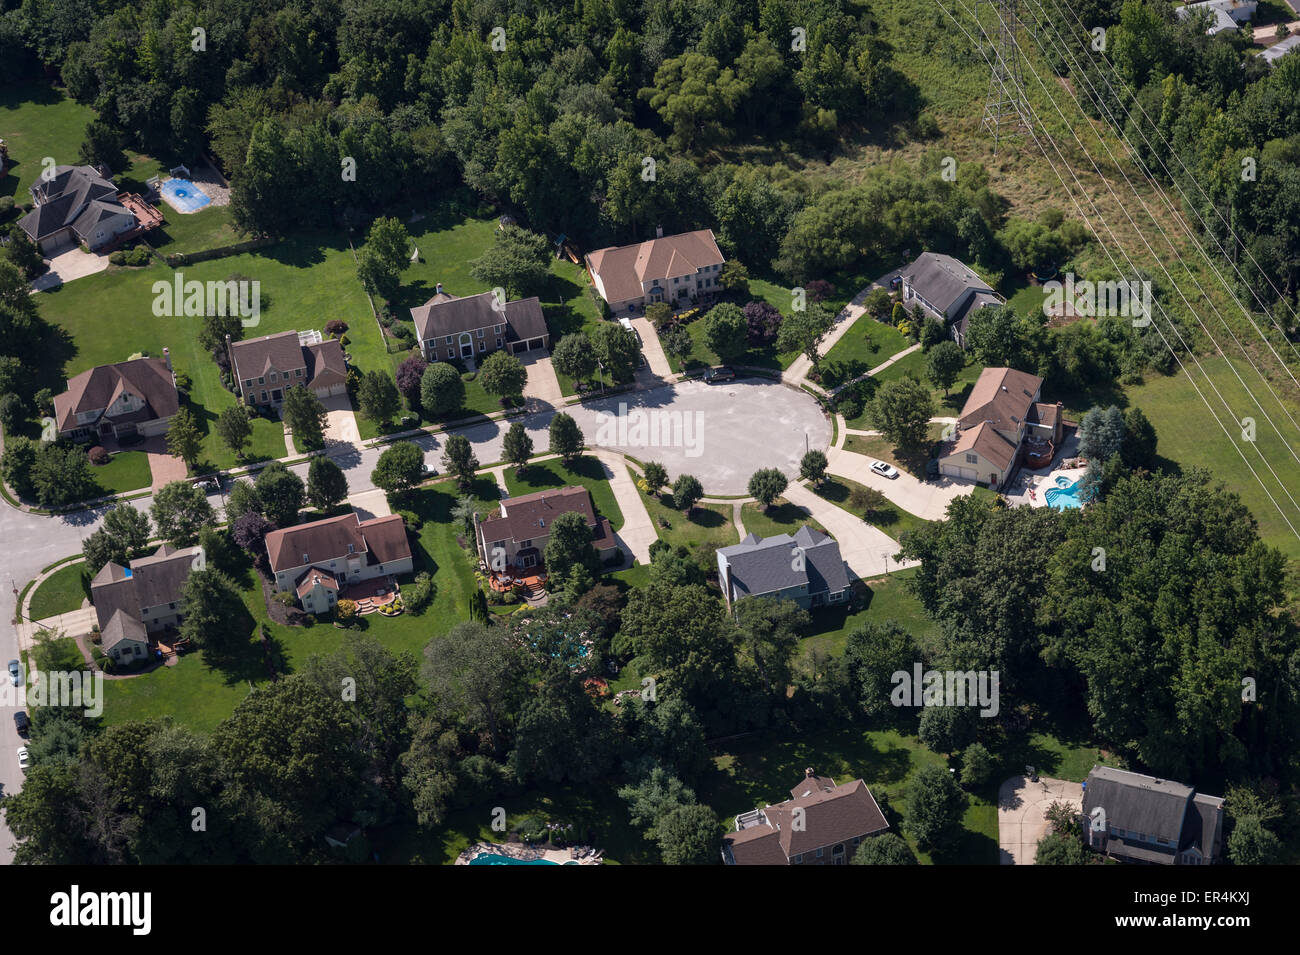 Vista aerea del case residenziale nella periferia di Cul de Sac quartiere, New Jersey, STATI UNITI D'AMERICA Foto Stock